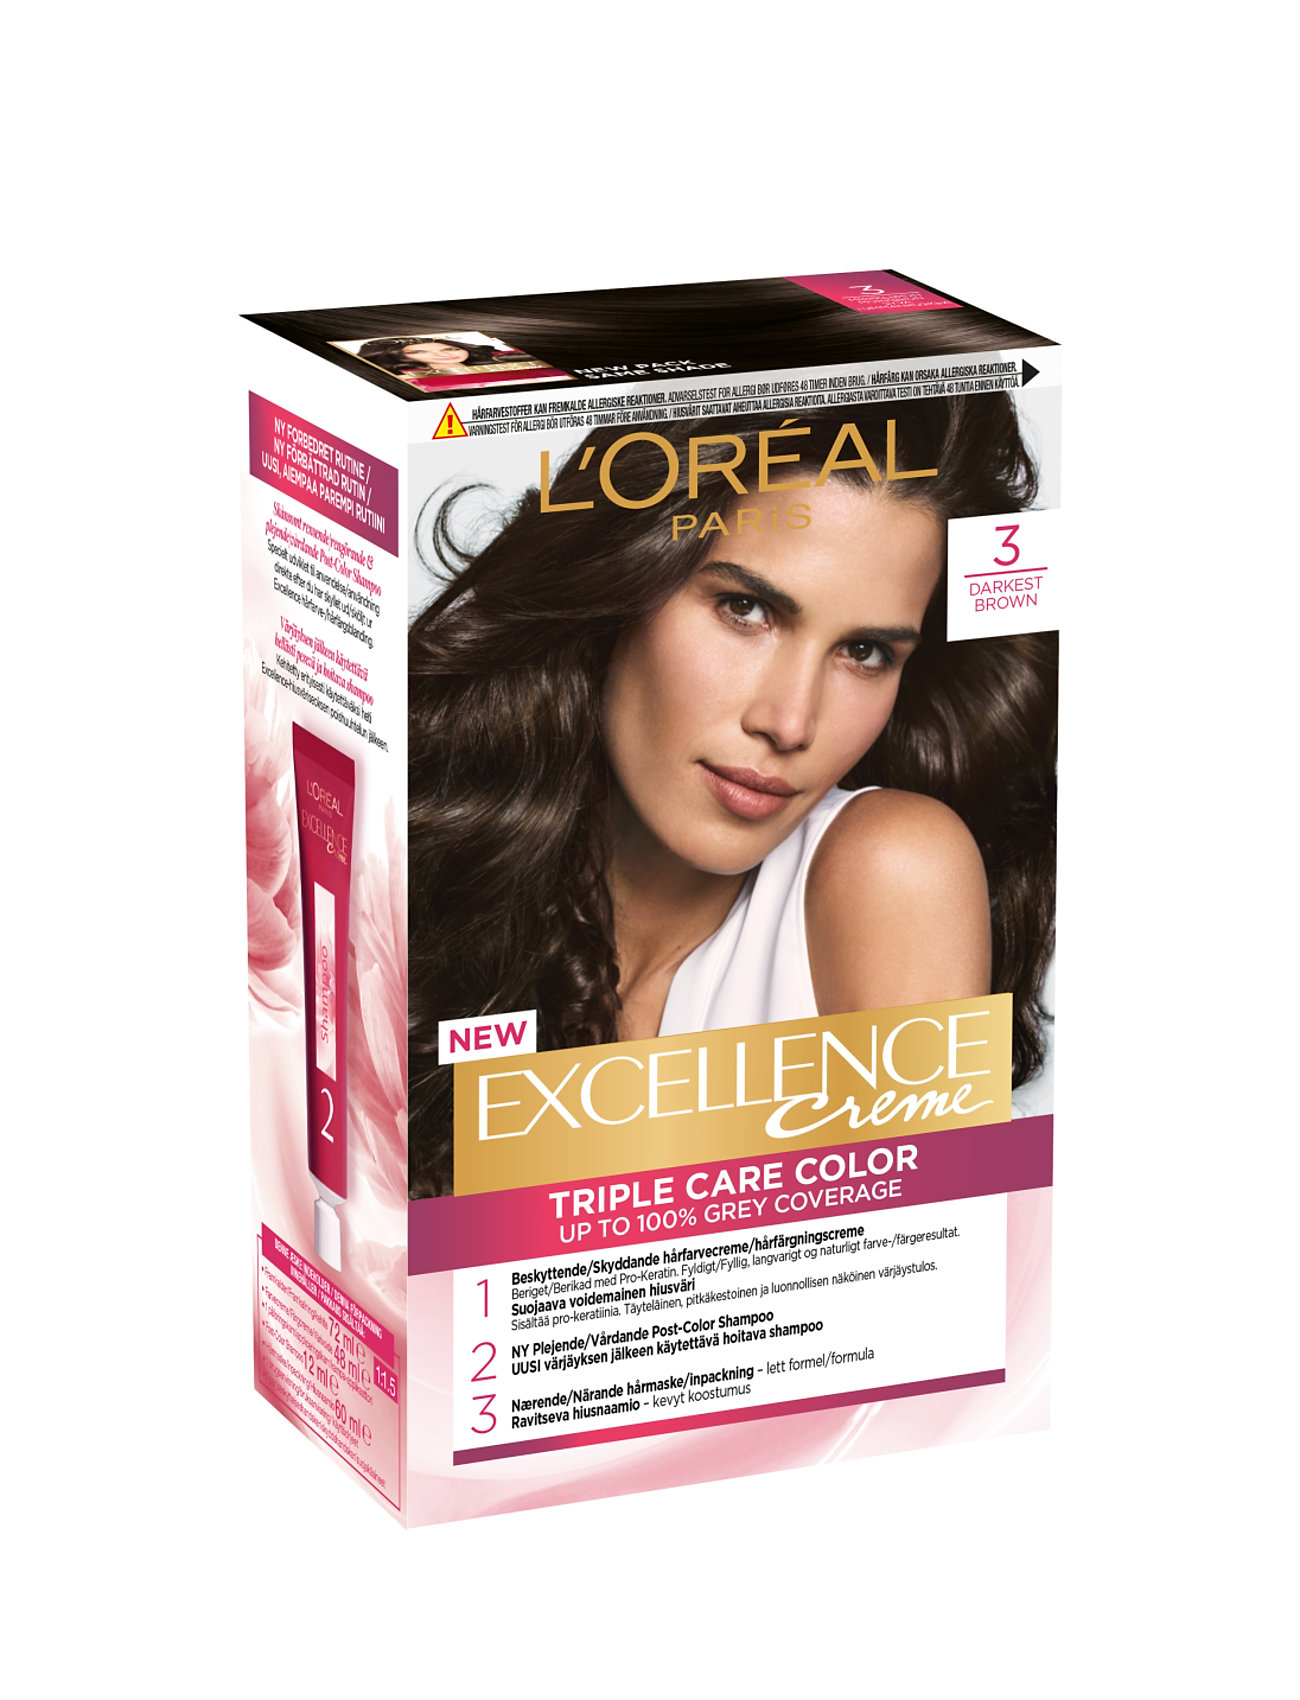 L'oréal Paris Excellence Color Cream Kit 3 Darkest Brown Beauty Women Hair Care Color Treatments Nude L'Oréal Paris